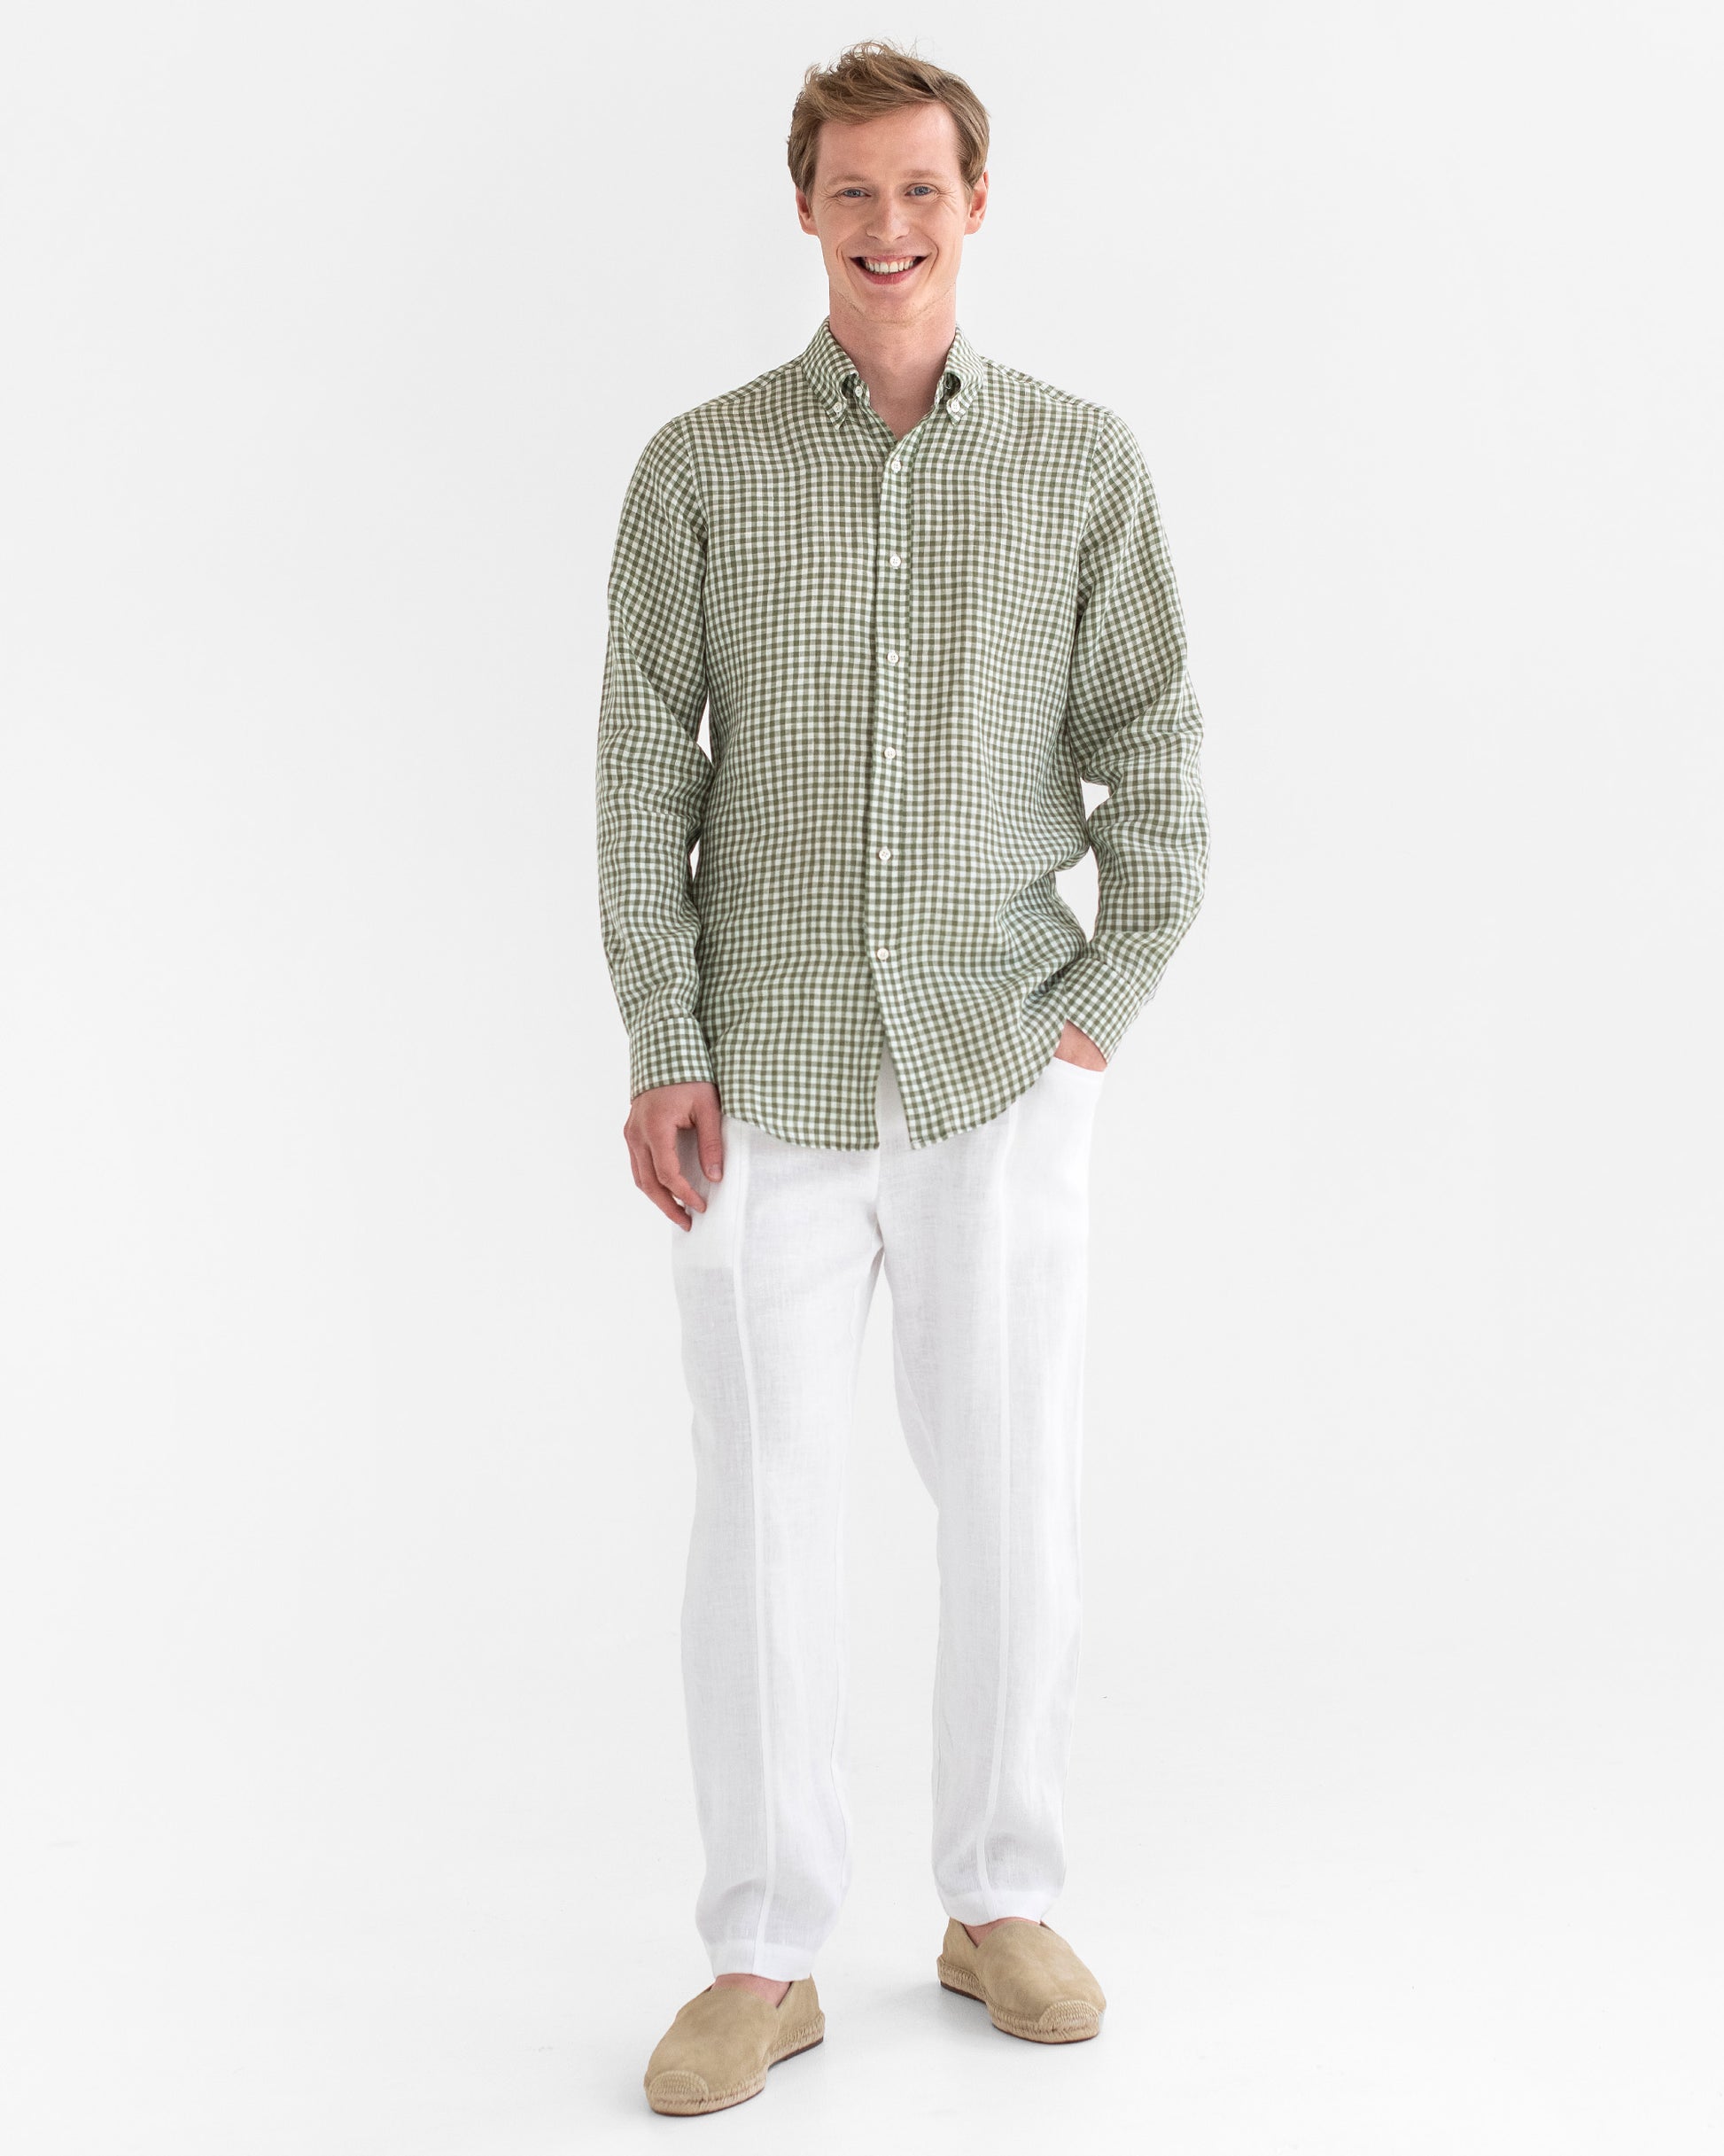 Men's classic linen shirt WENGEN in Forest green gingham - MagicLinen